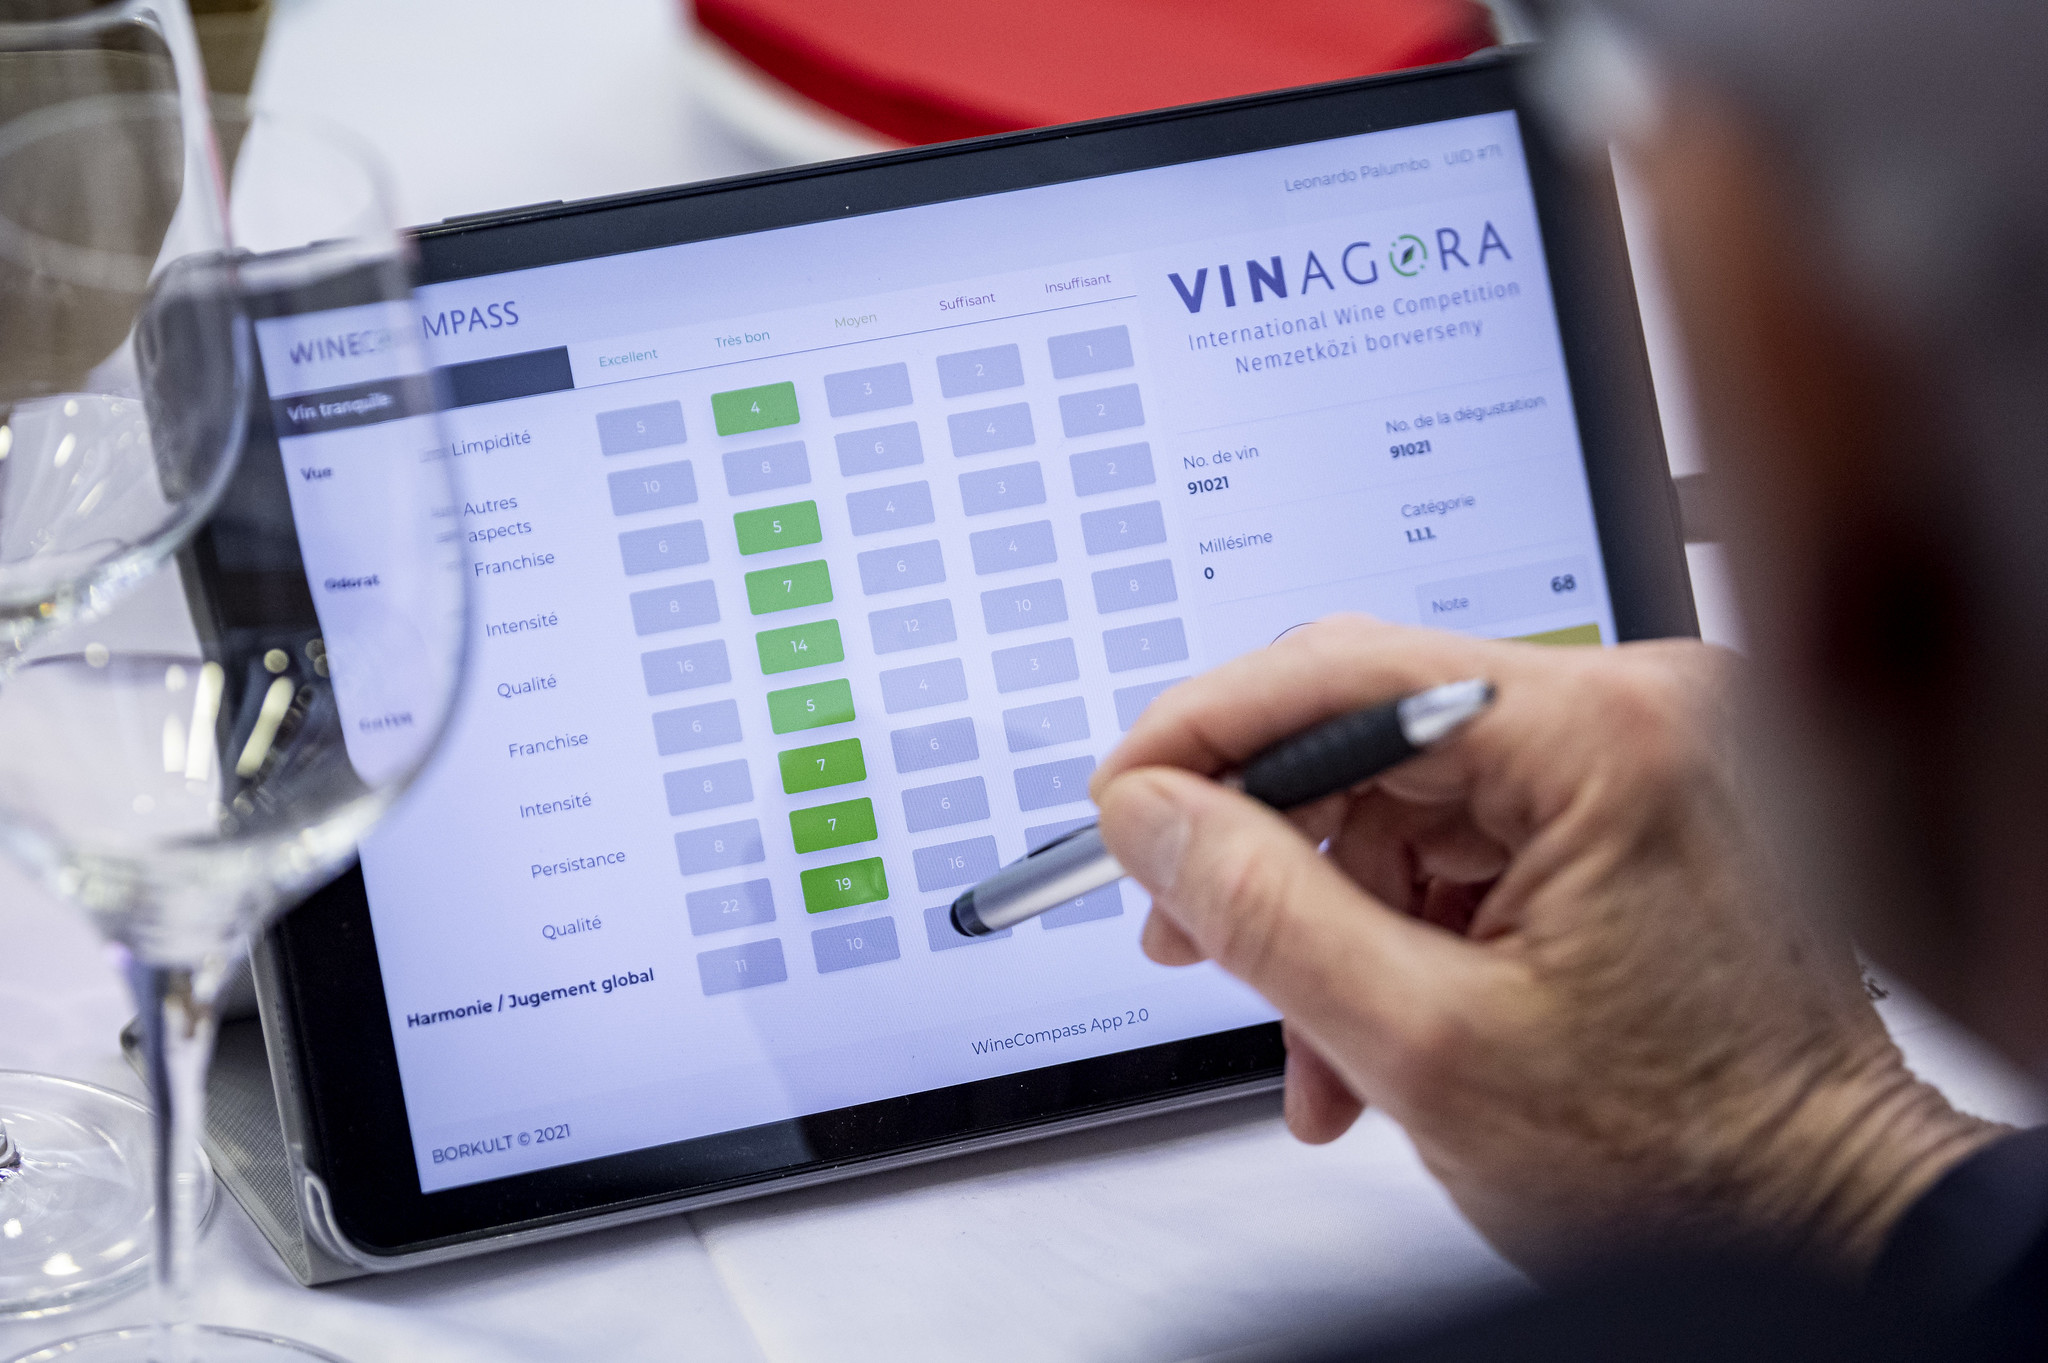 VinAgora - Certified Quality